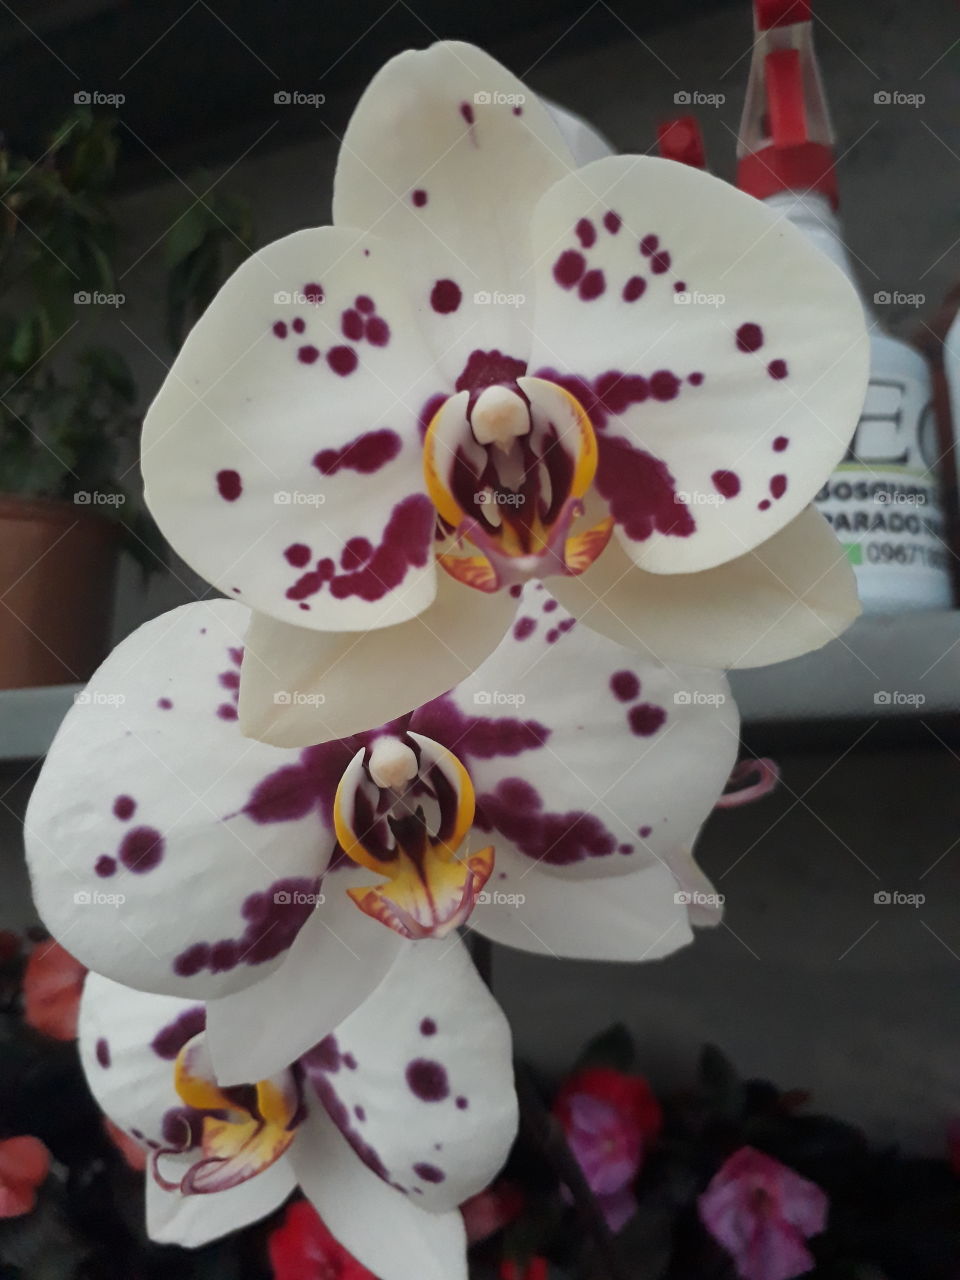 white orchid with purple spots - orquídea blanca con manchas moradas